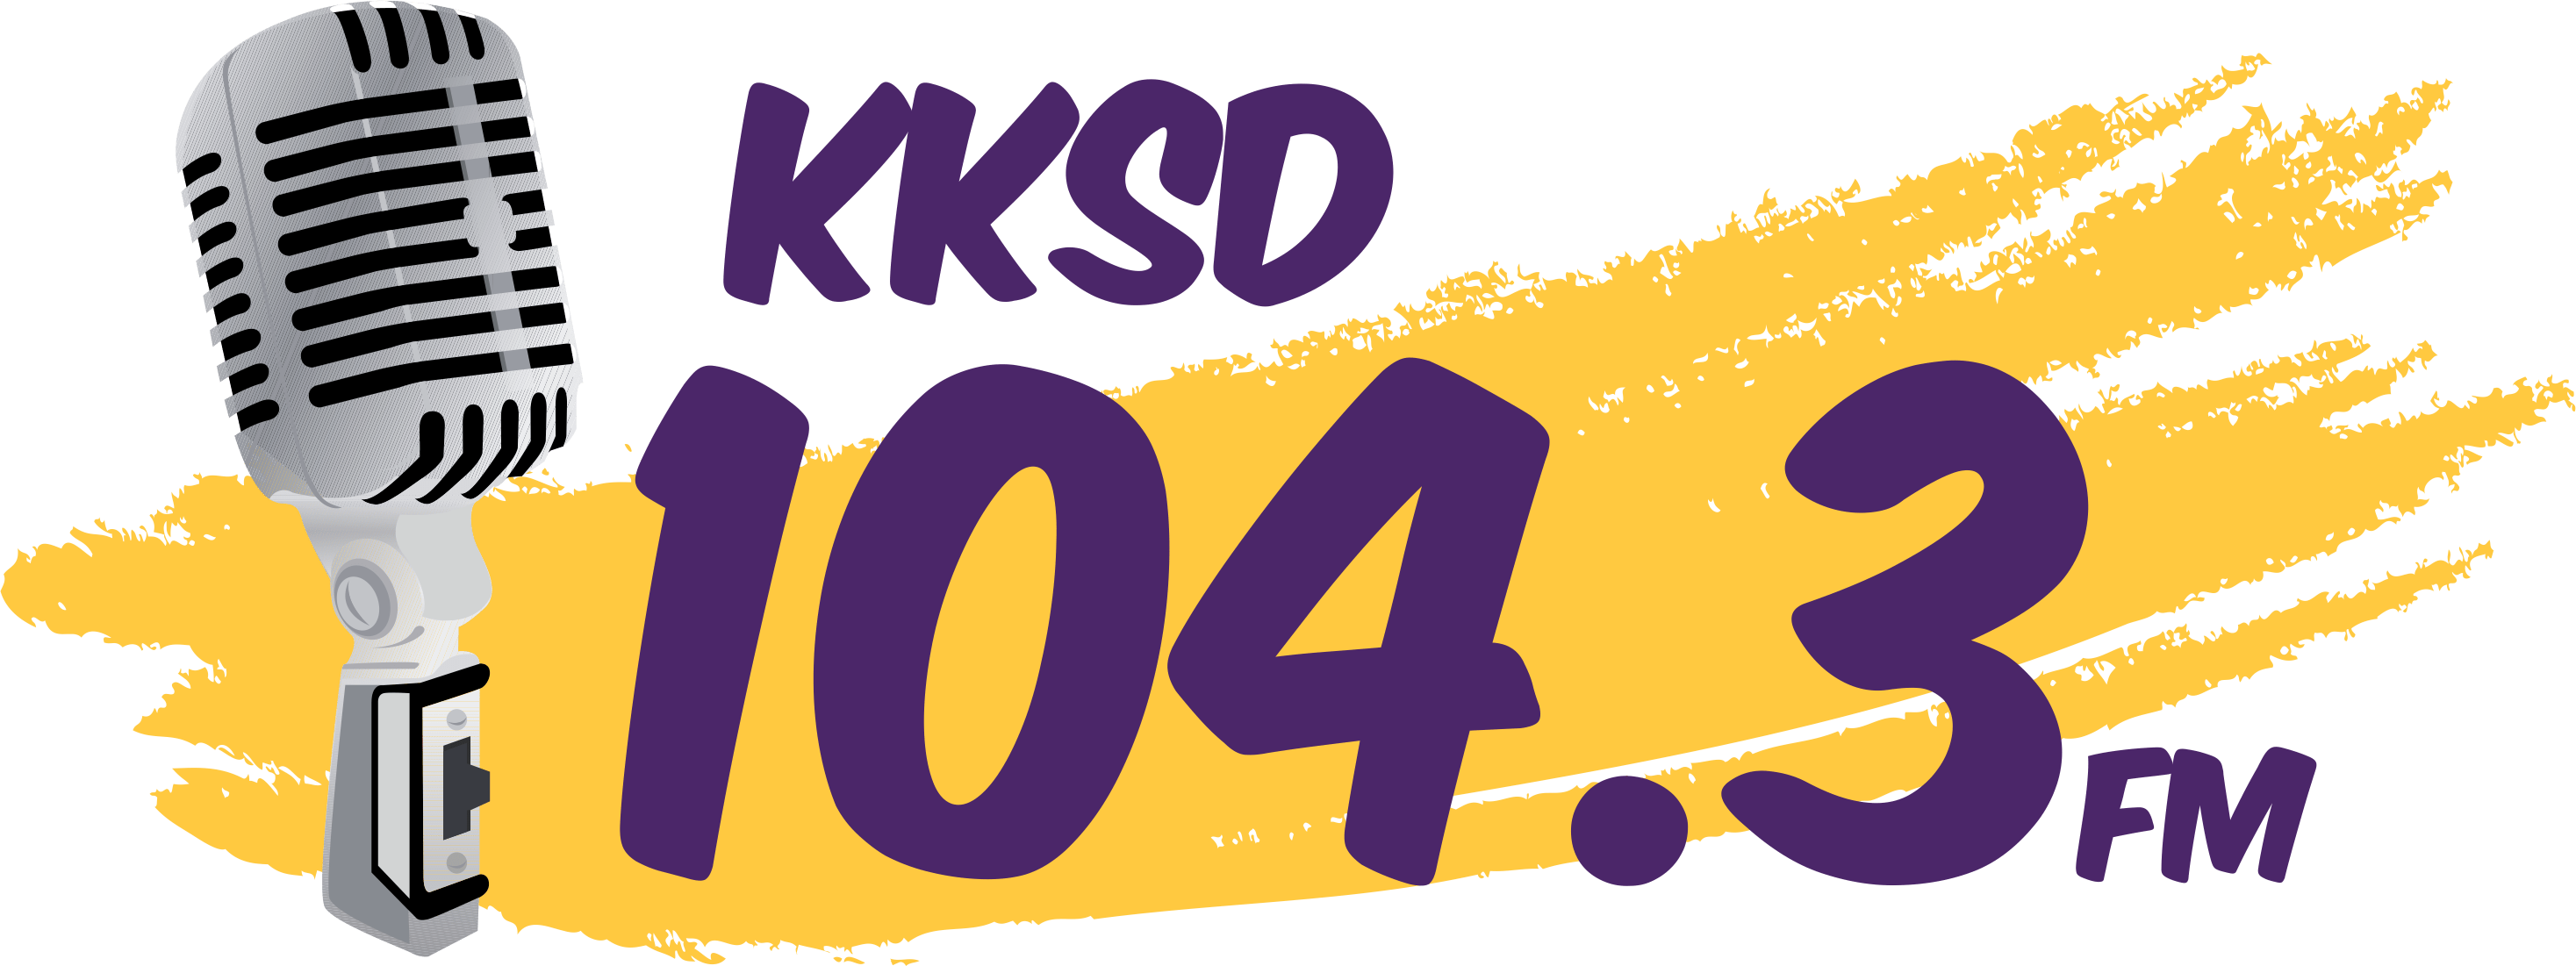 KKSD-FM 104.3